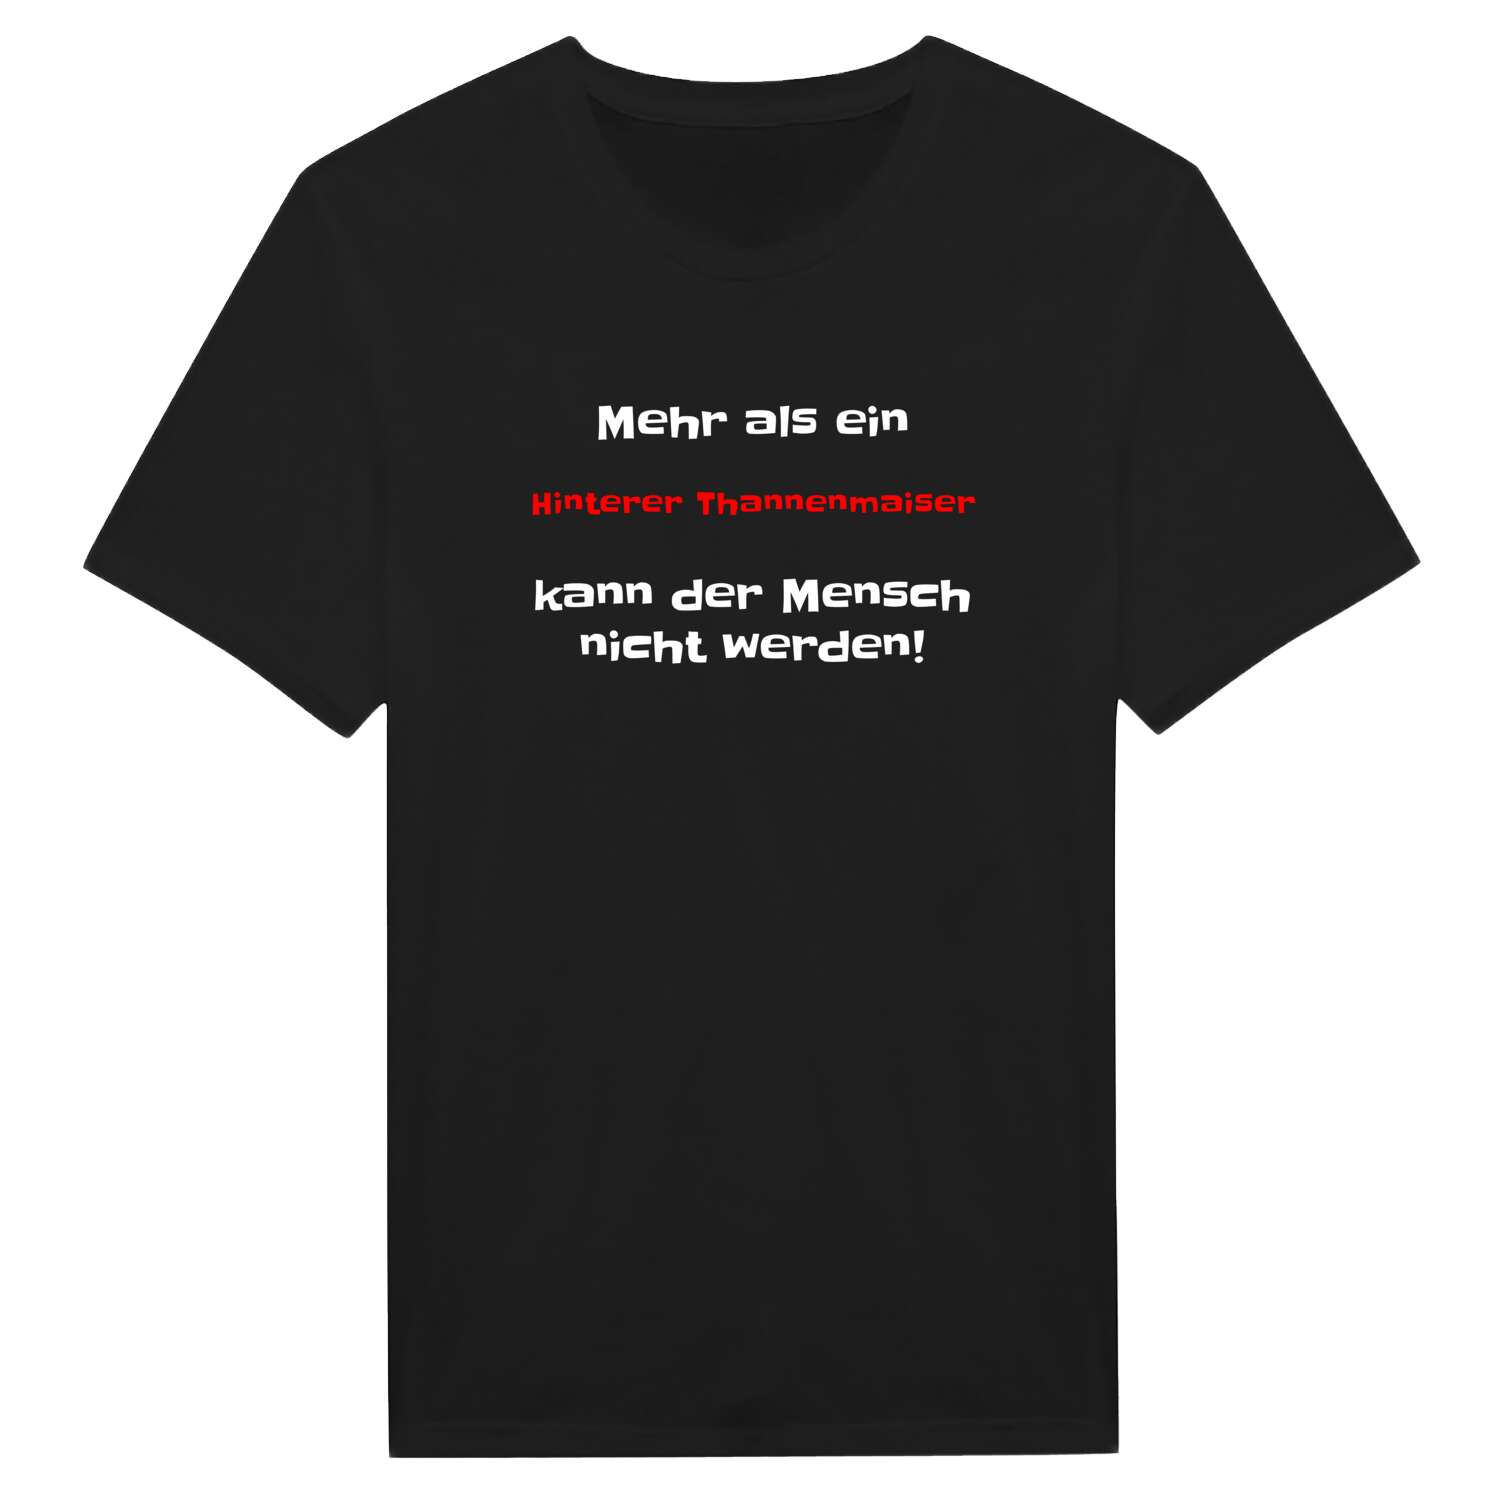 Hinterer Thannenmais T-Shirt »Mehr als ein«